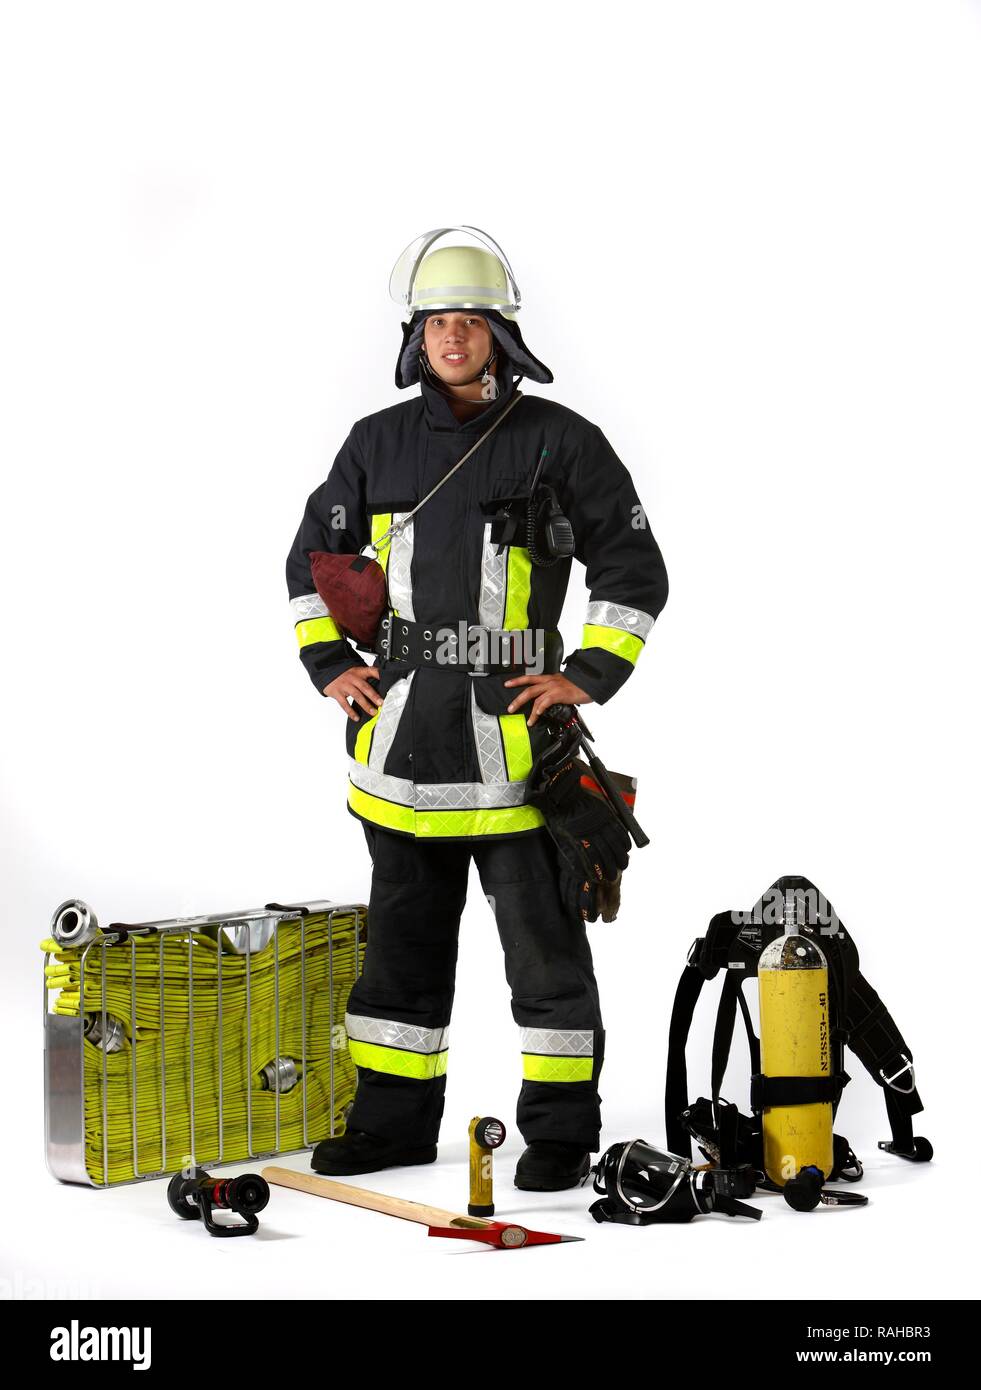 Feuerwehrmann, Teil einer Antwort Kader für die Brandbekämpfung, mit Schutzkleidung aus Nomex, ein Helm mit Visier, einer Feueraxt, Stockfoto